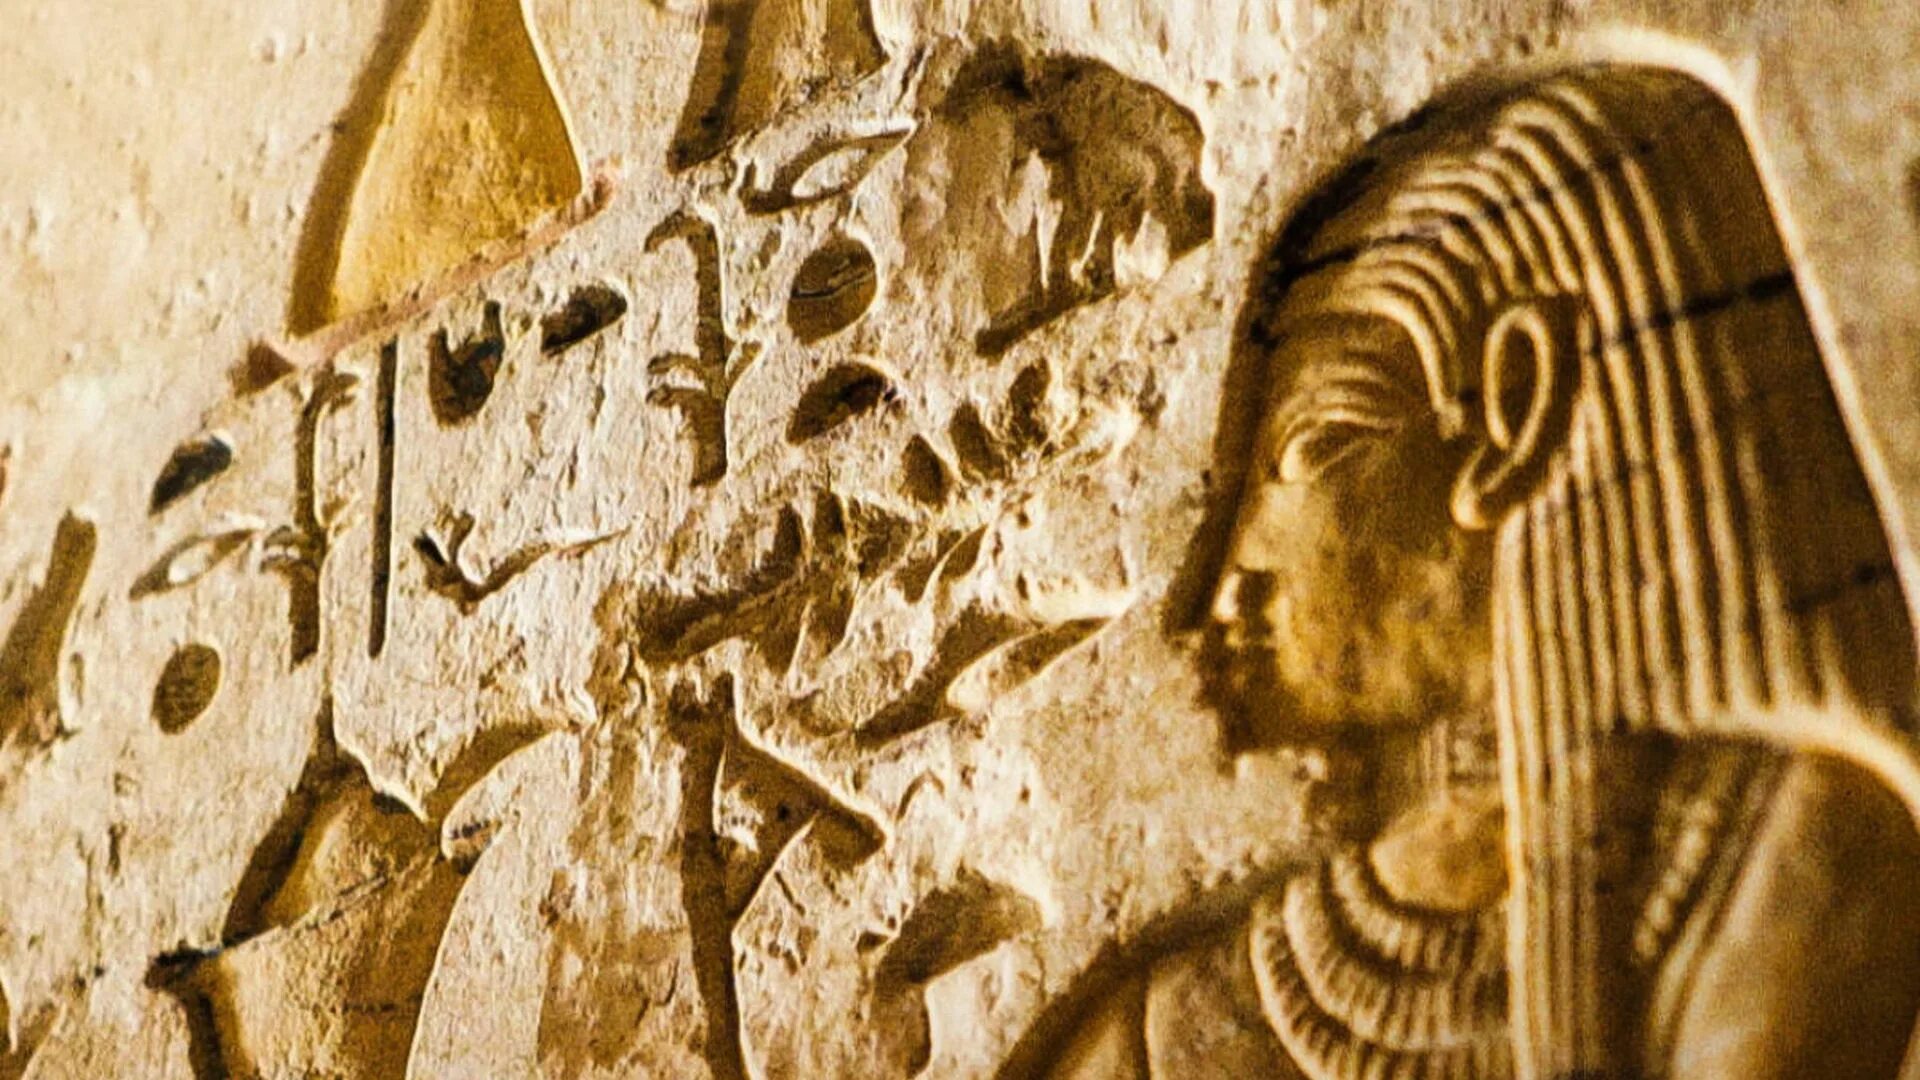 Saqqara Tomb Netflix. Гробница Саккара. Тайна саккарских гробниц. Тайны саккарских гробниц (2020). Про древний мир документальное